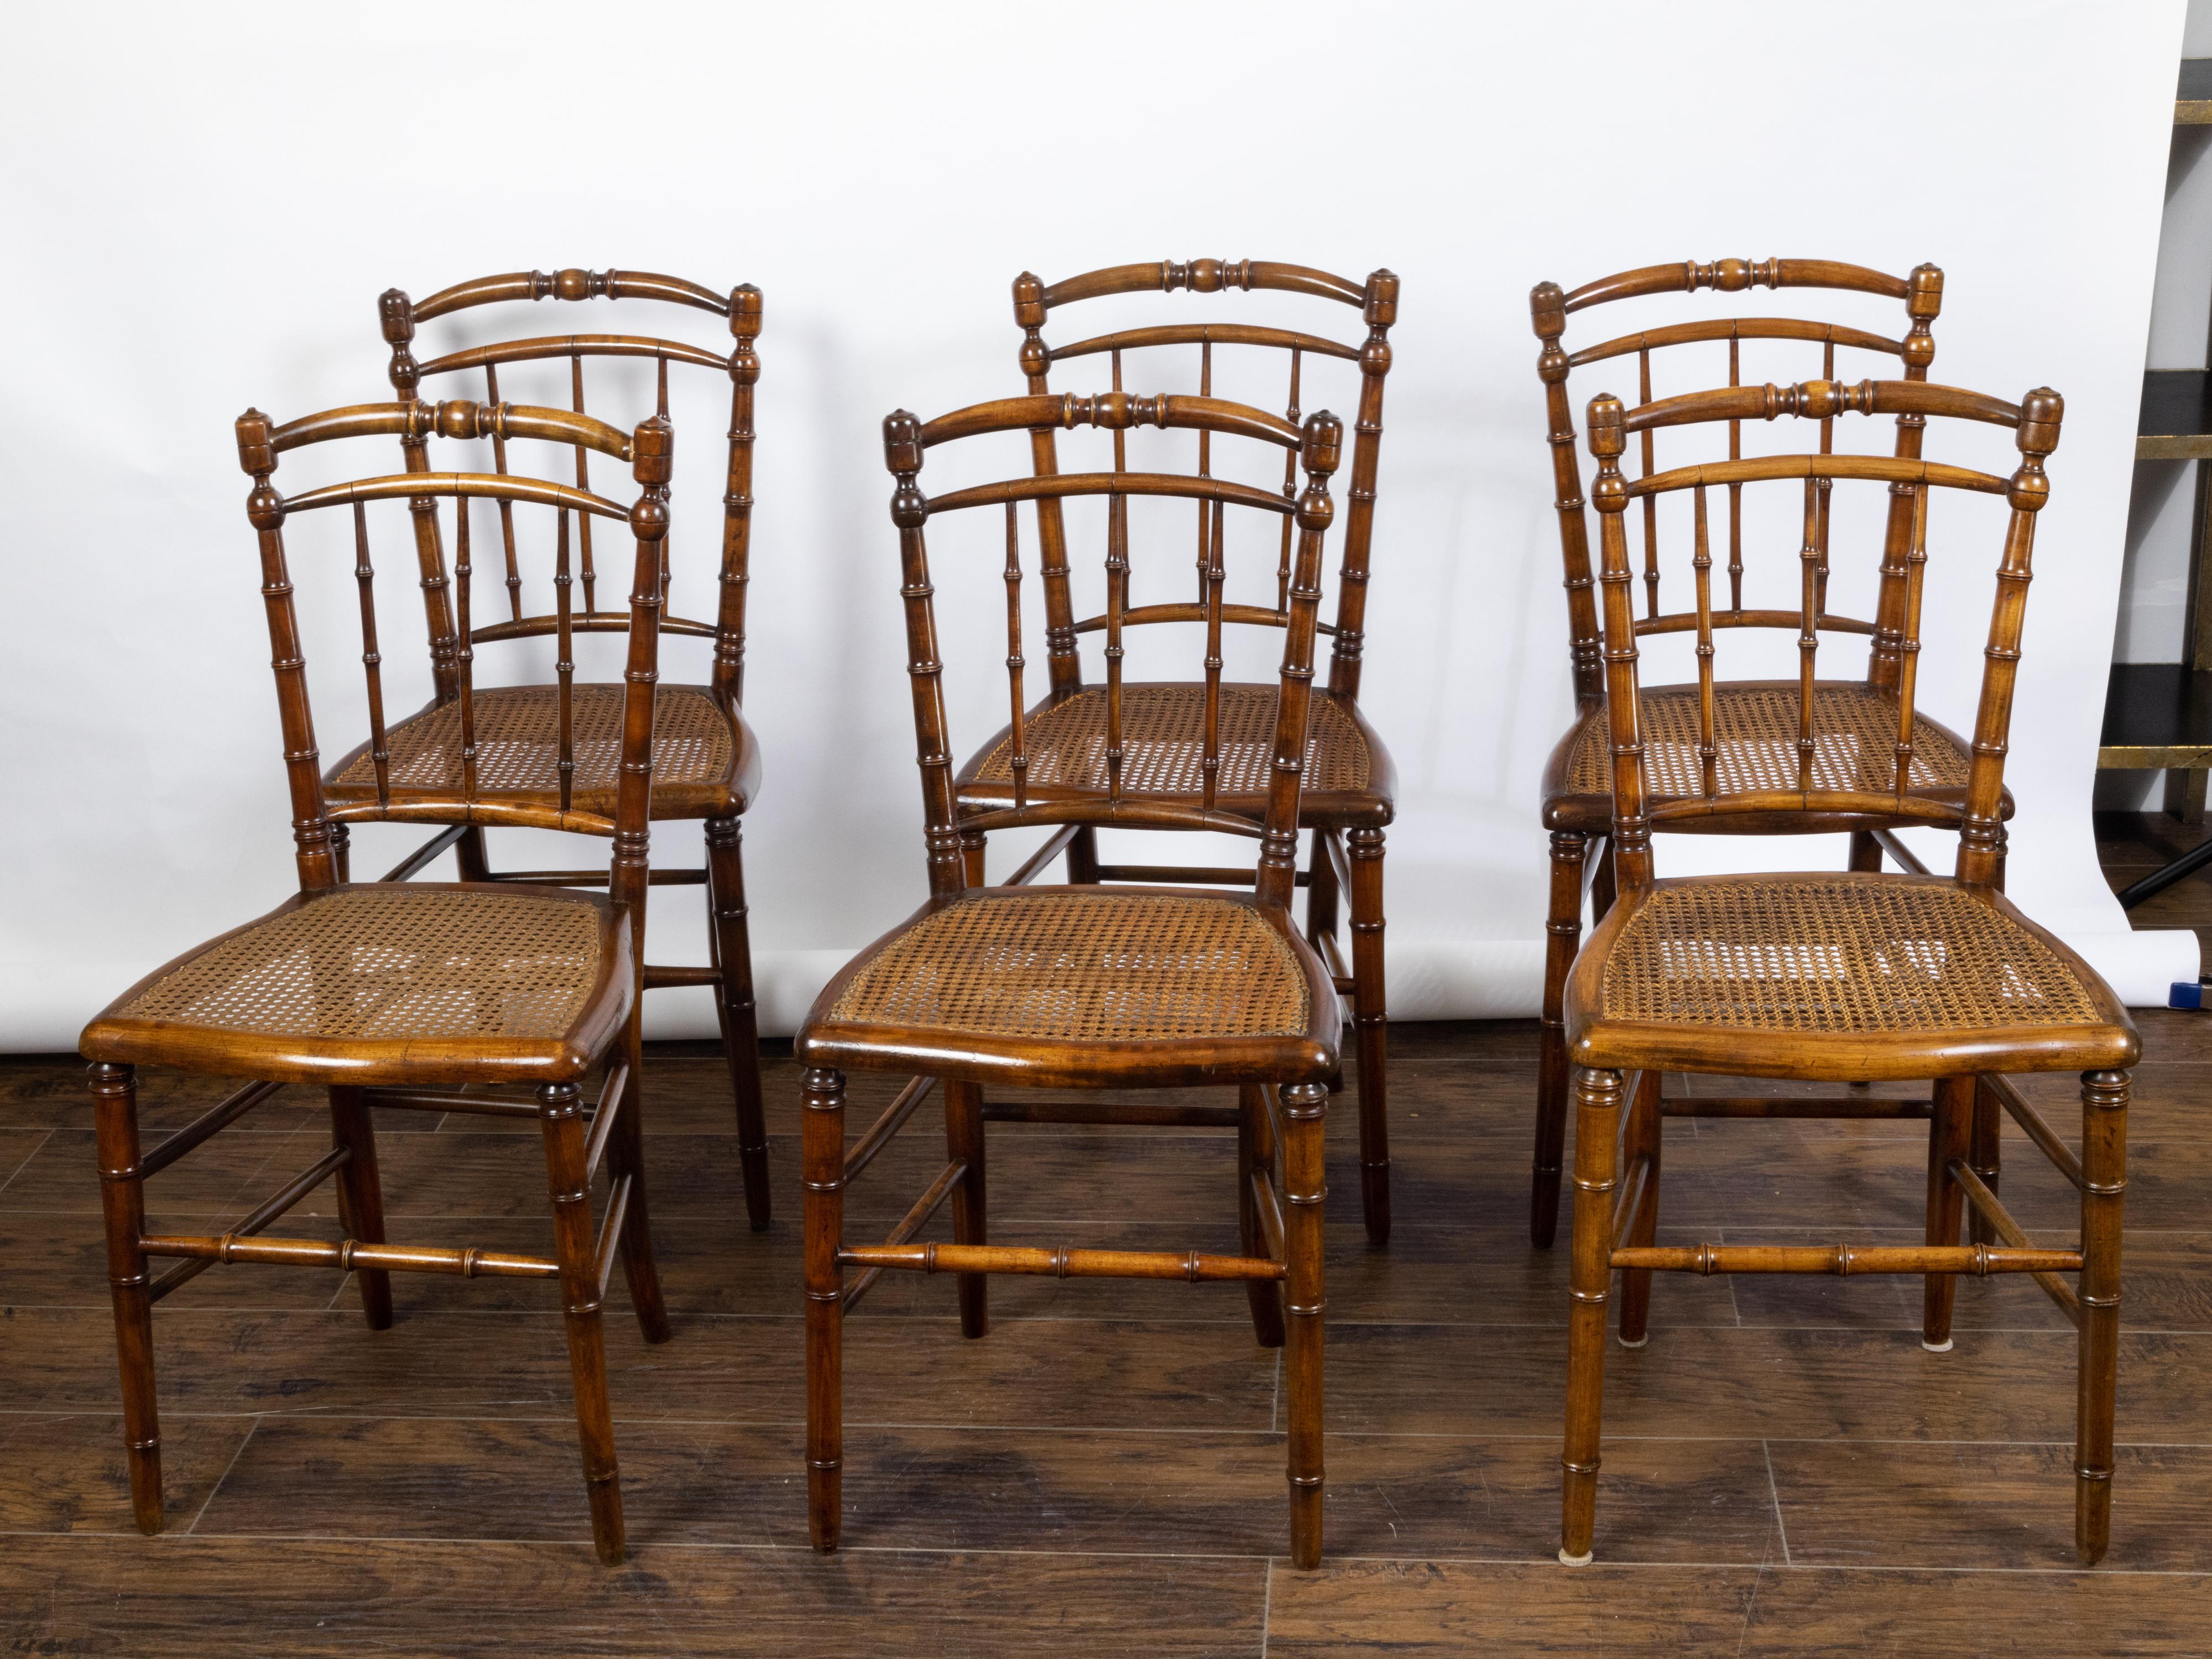 Un ensemble de six chaises d'appoint anglaises en noyer faux bambou du début du 20e siècle, avec des sièges en rotin. Créée en Angleterre au tournant du siècle, cette série de six chaises d'appoint se caractérise par un dossier ouvert et arqué qui